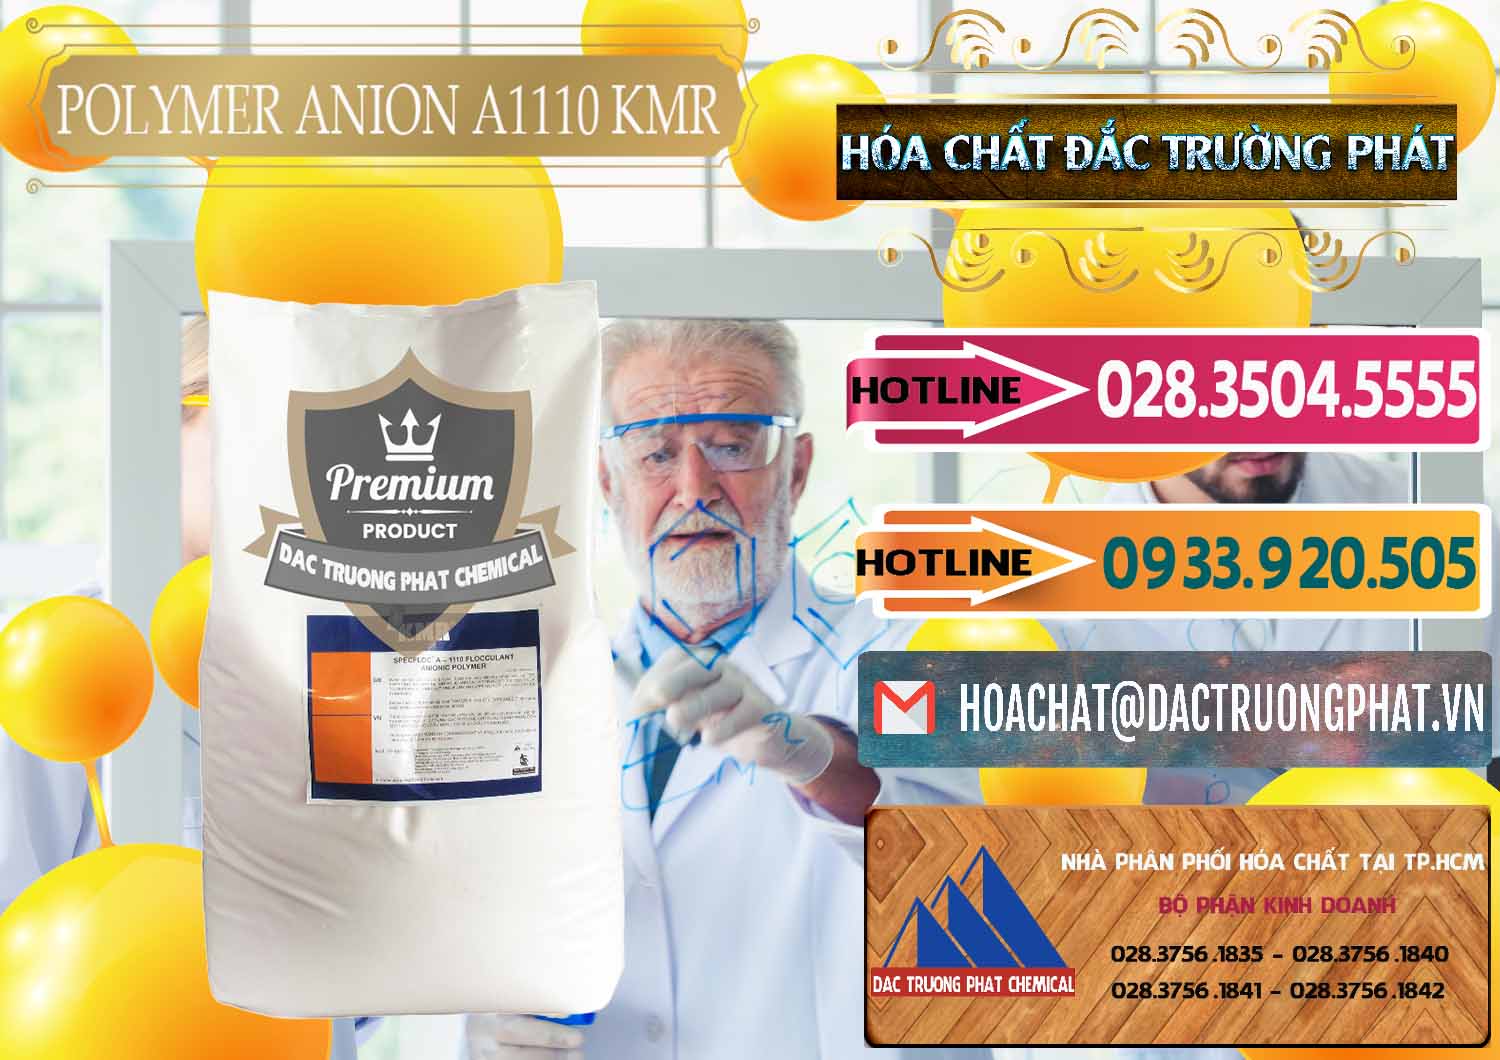 Phân phối ( bán ) Polymer Anion A1110 - KMR Anh Quốc England - 0118 - Nơi chuyên cung cấp & kinh doanh hóa chất tại TP.HCM - dactruongphat.vn